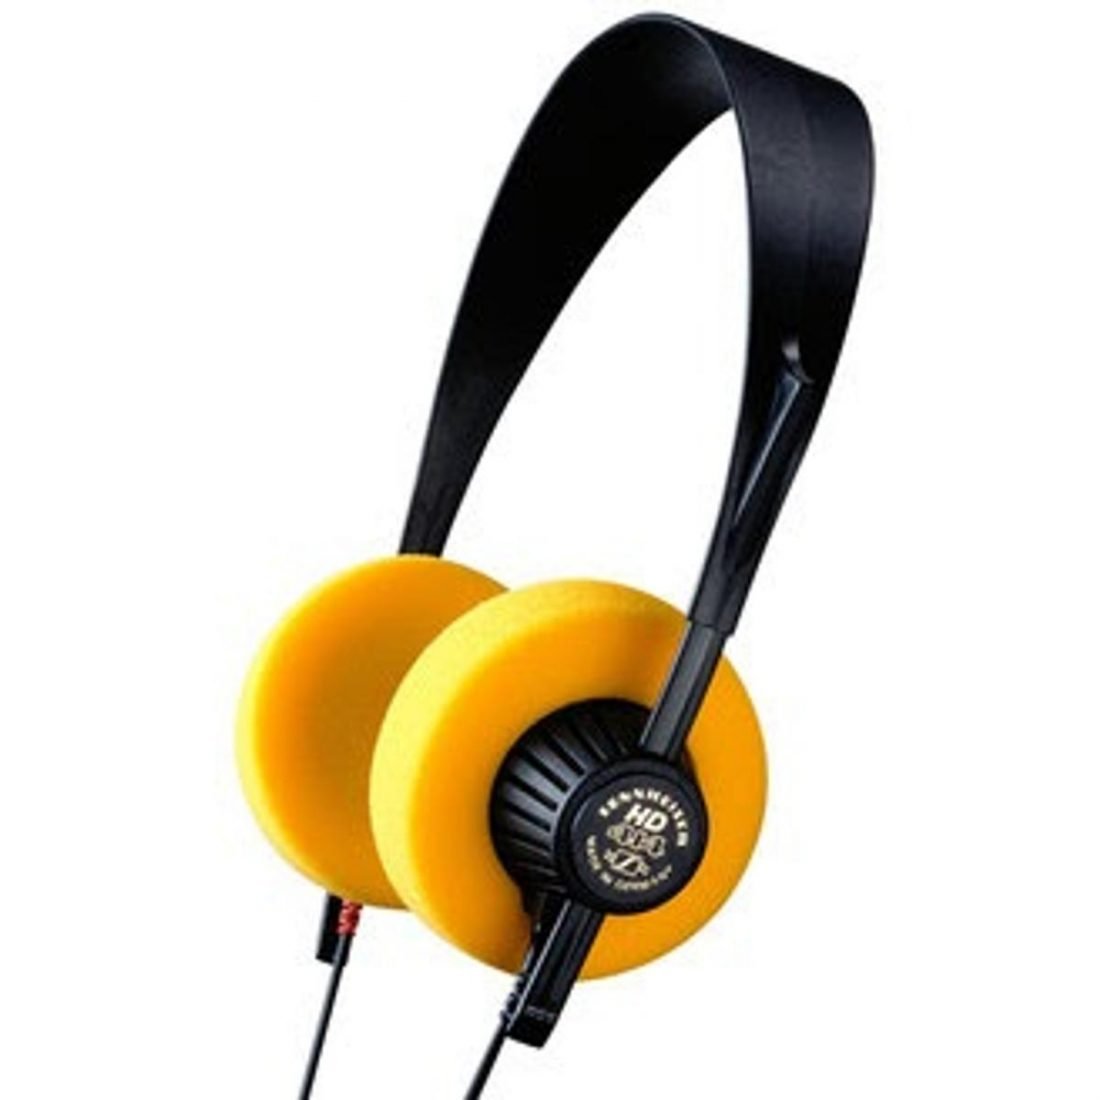 Sennheiser open-back headphones. (From: sennheiser.com)